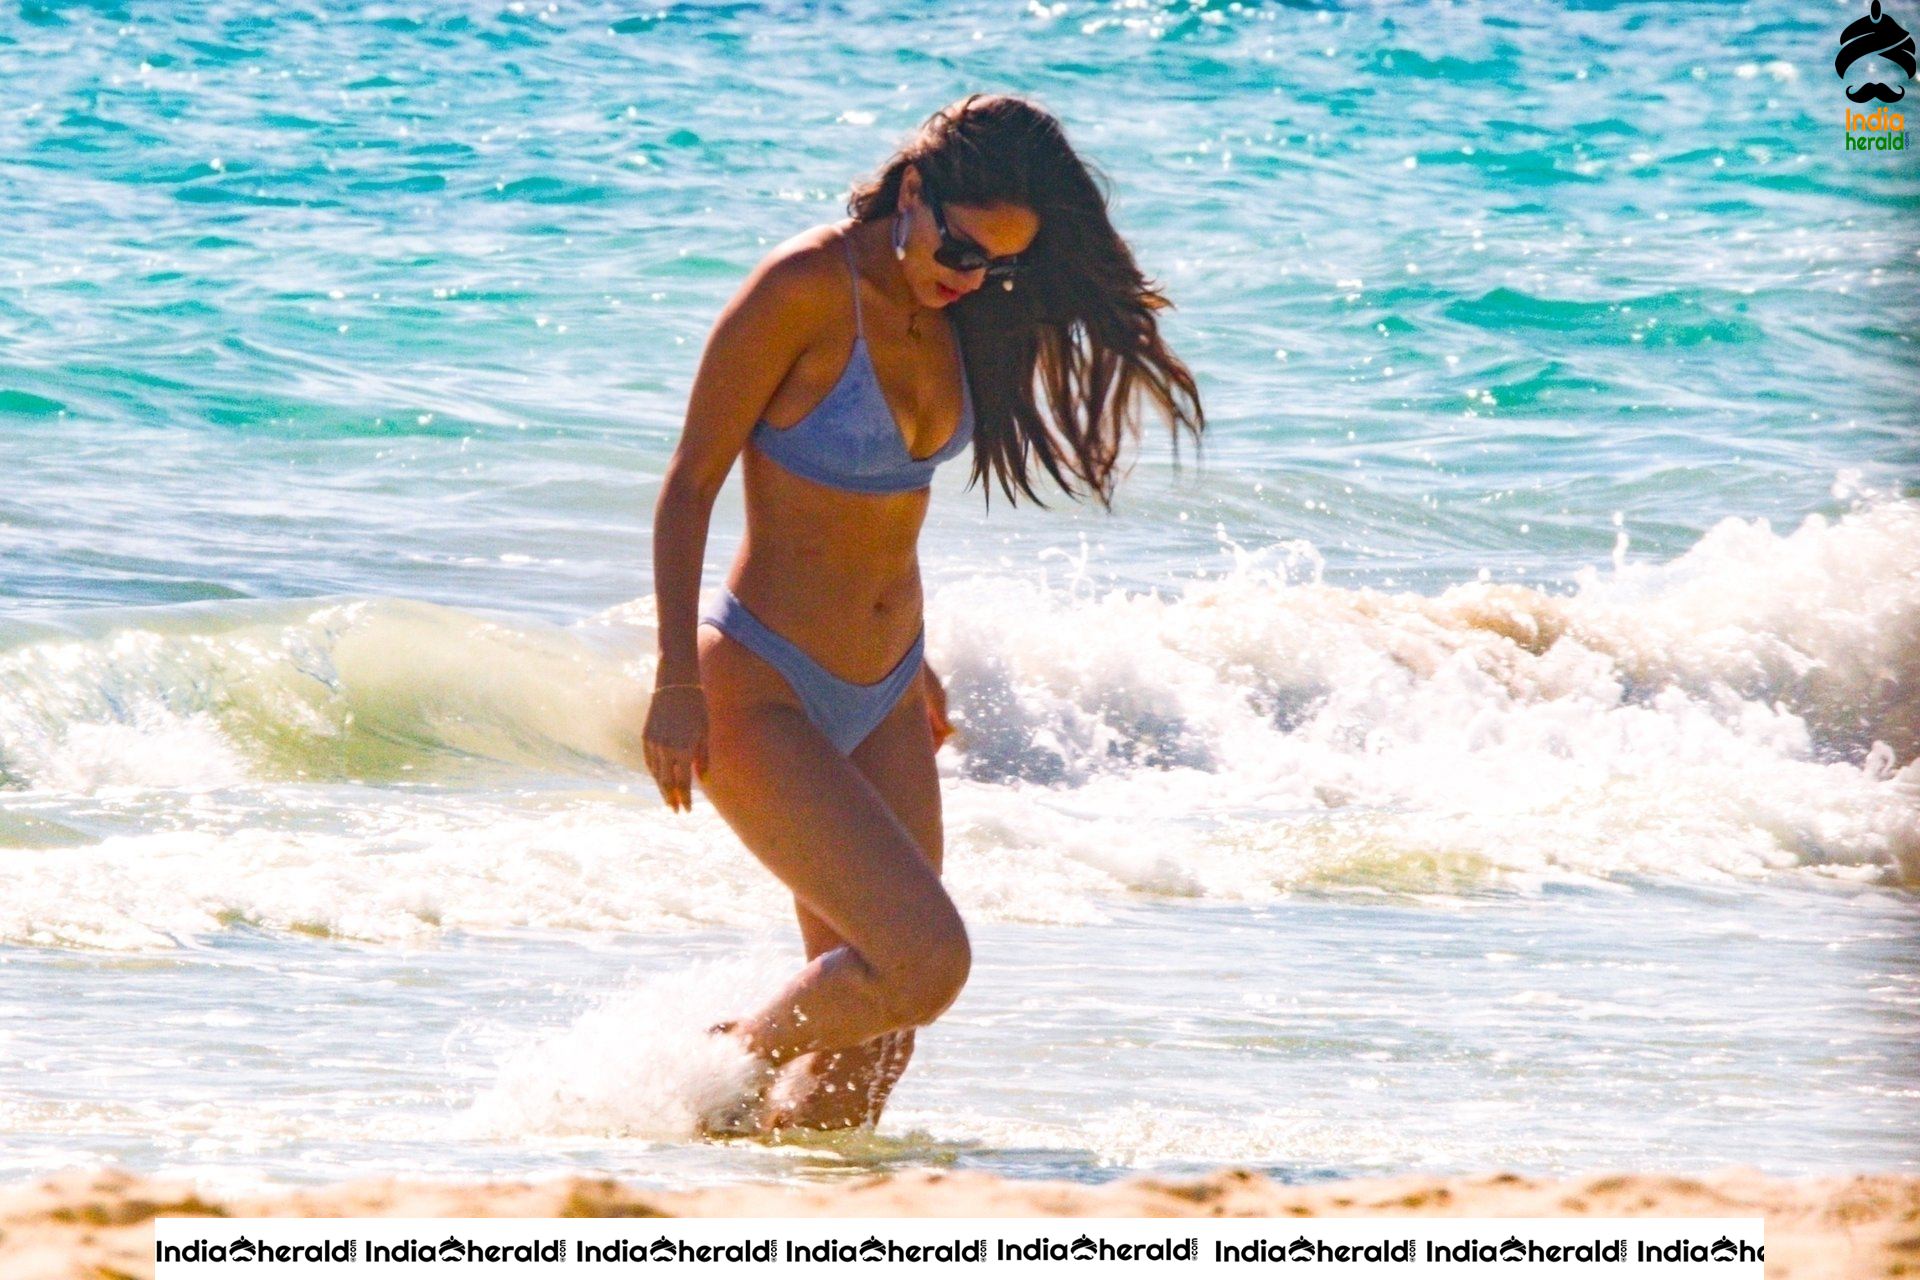 Eiza Gonzalez Enjoying with her Boyfriend in Bikini